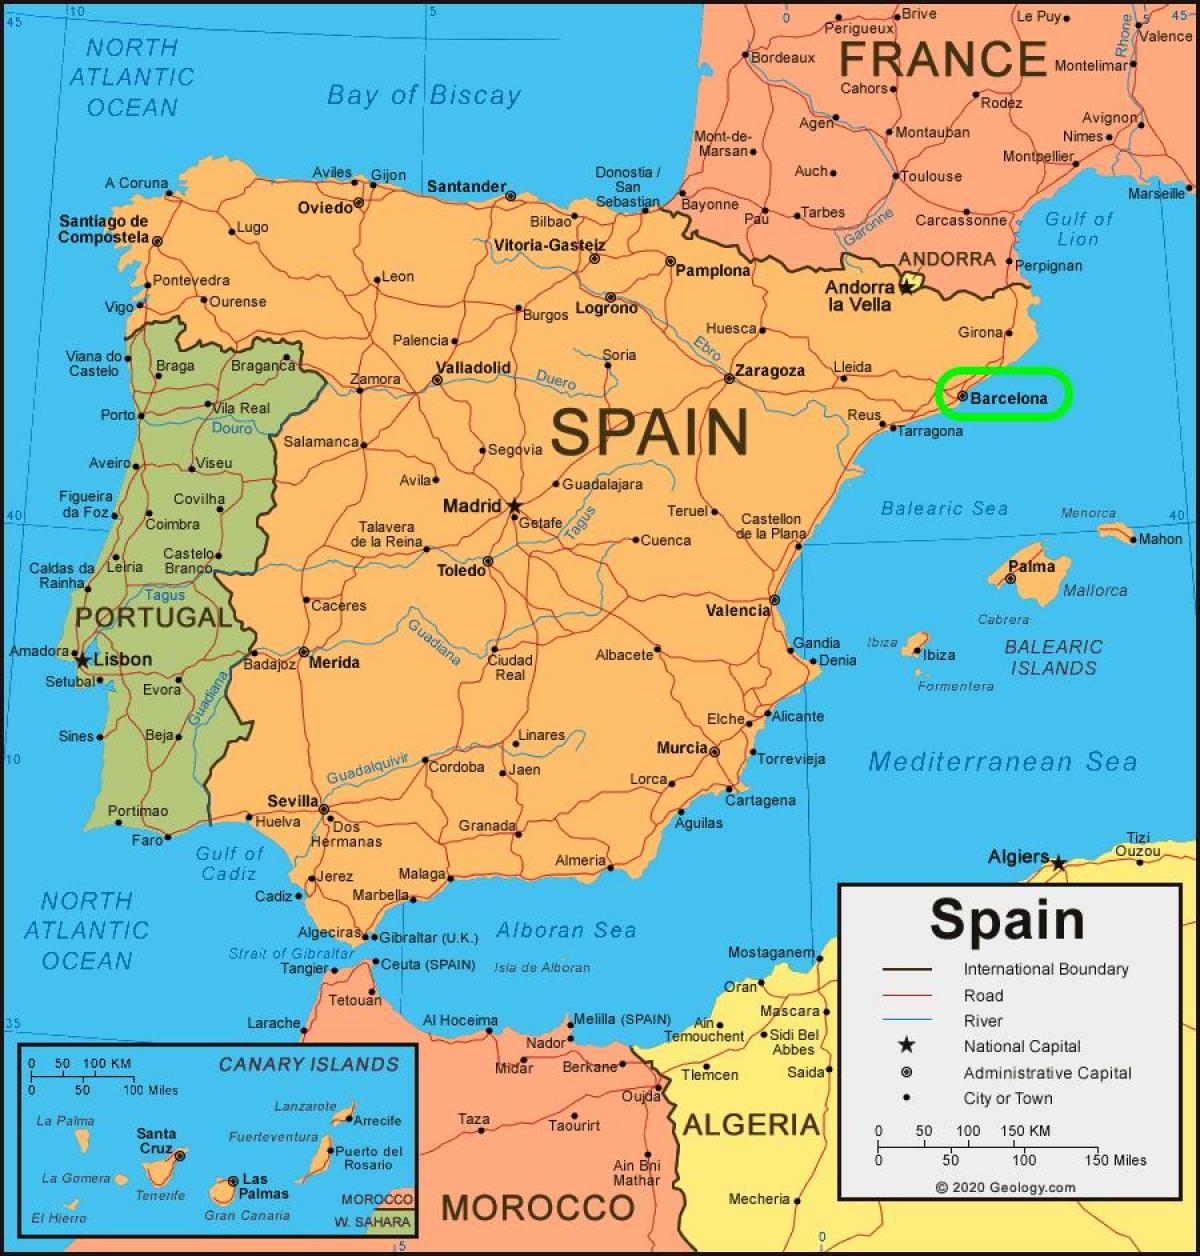 地図のスペイン、バルセロナ